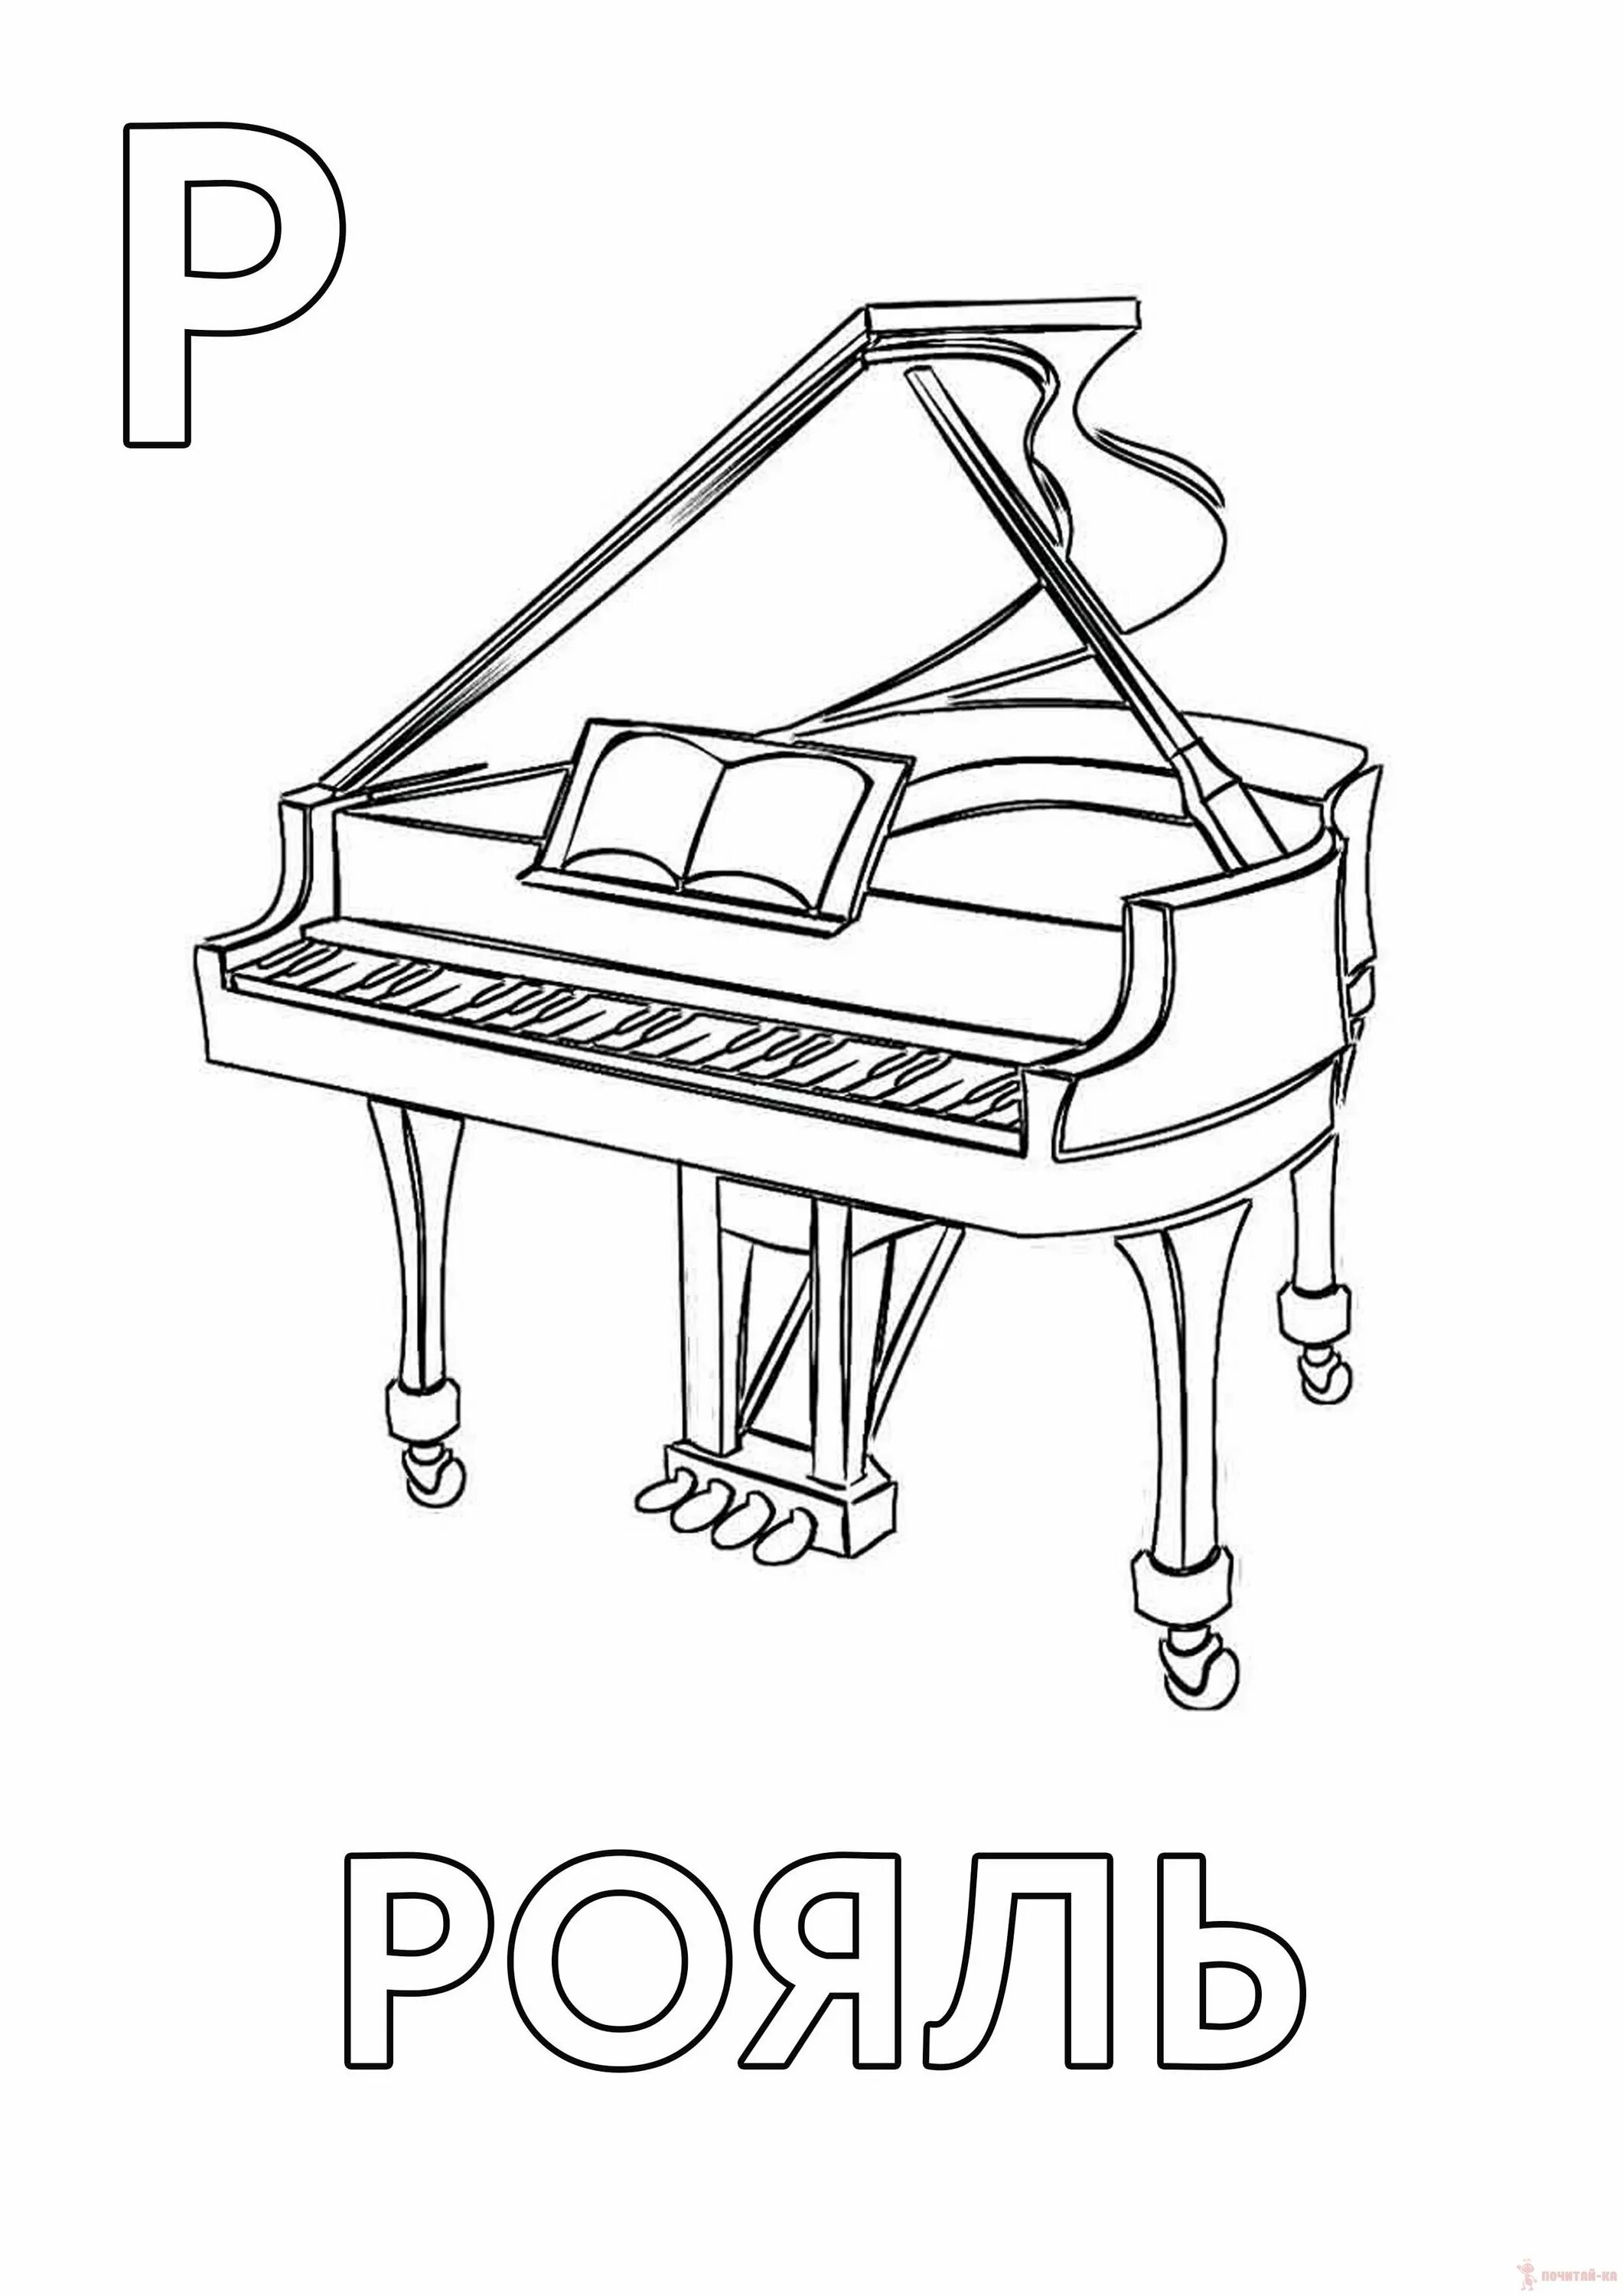 Piano for children #22